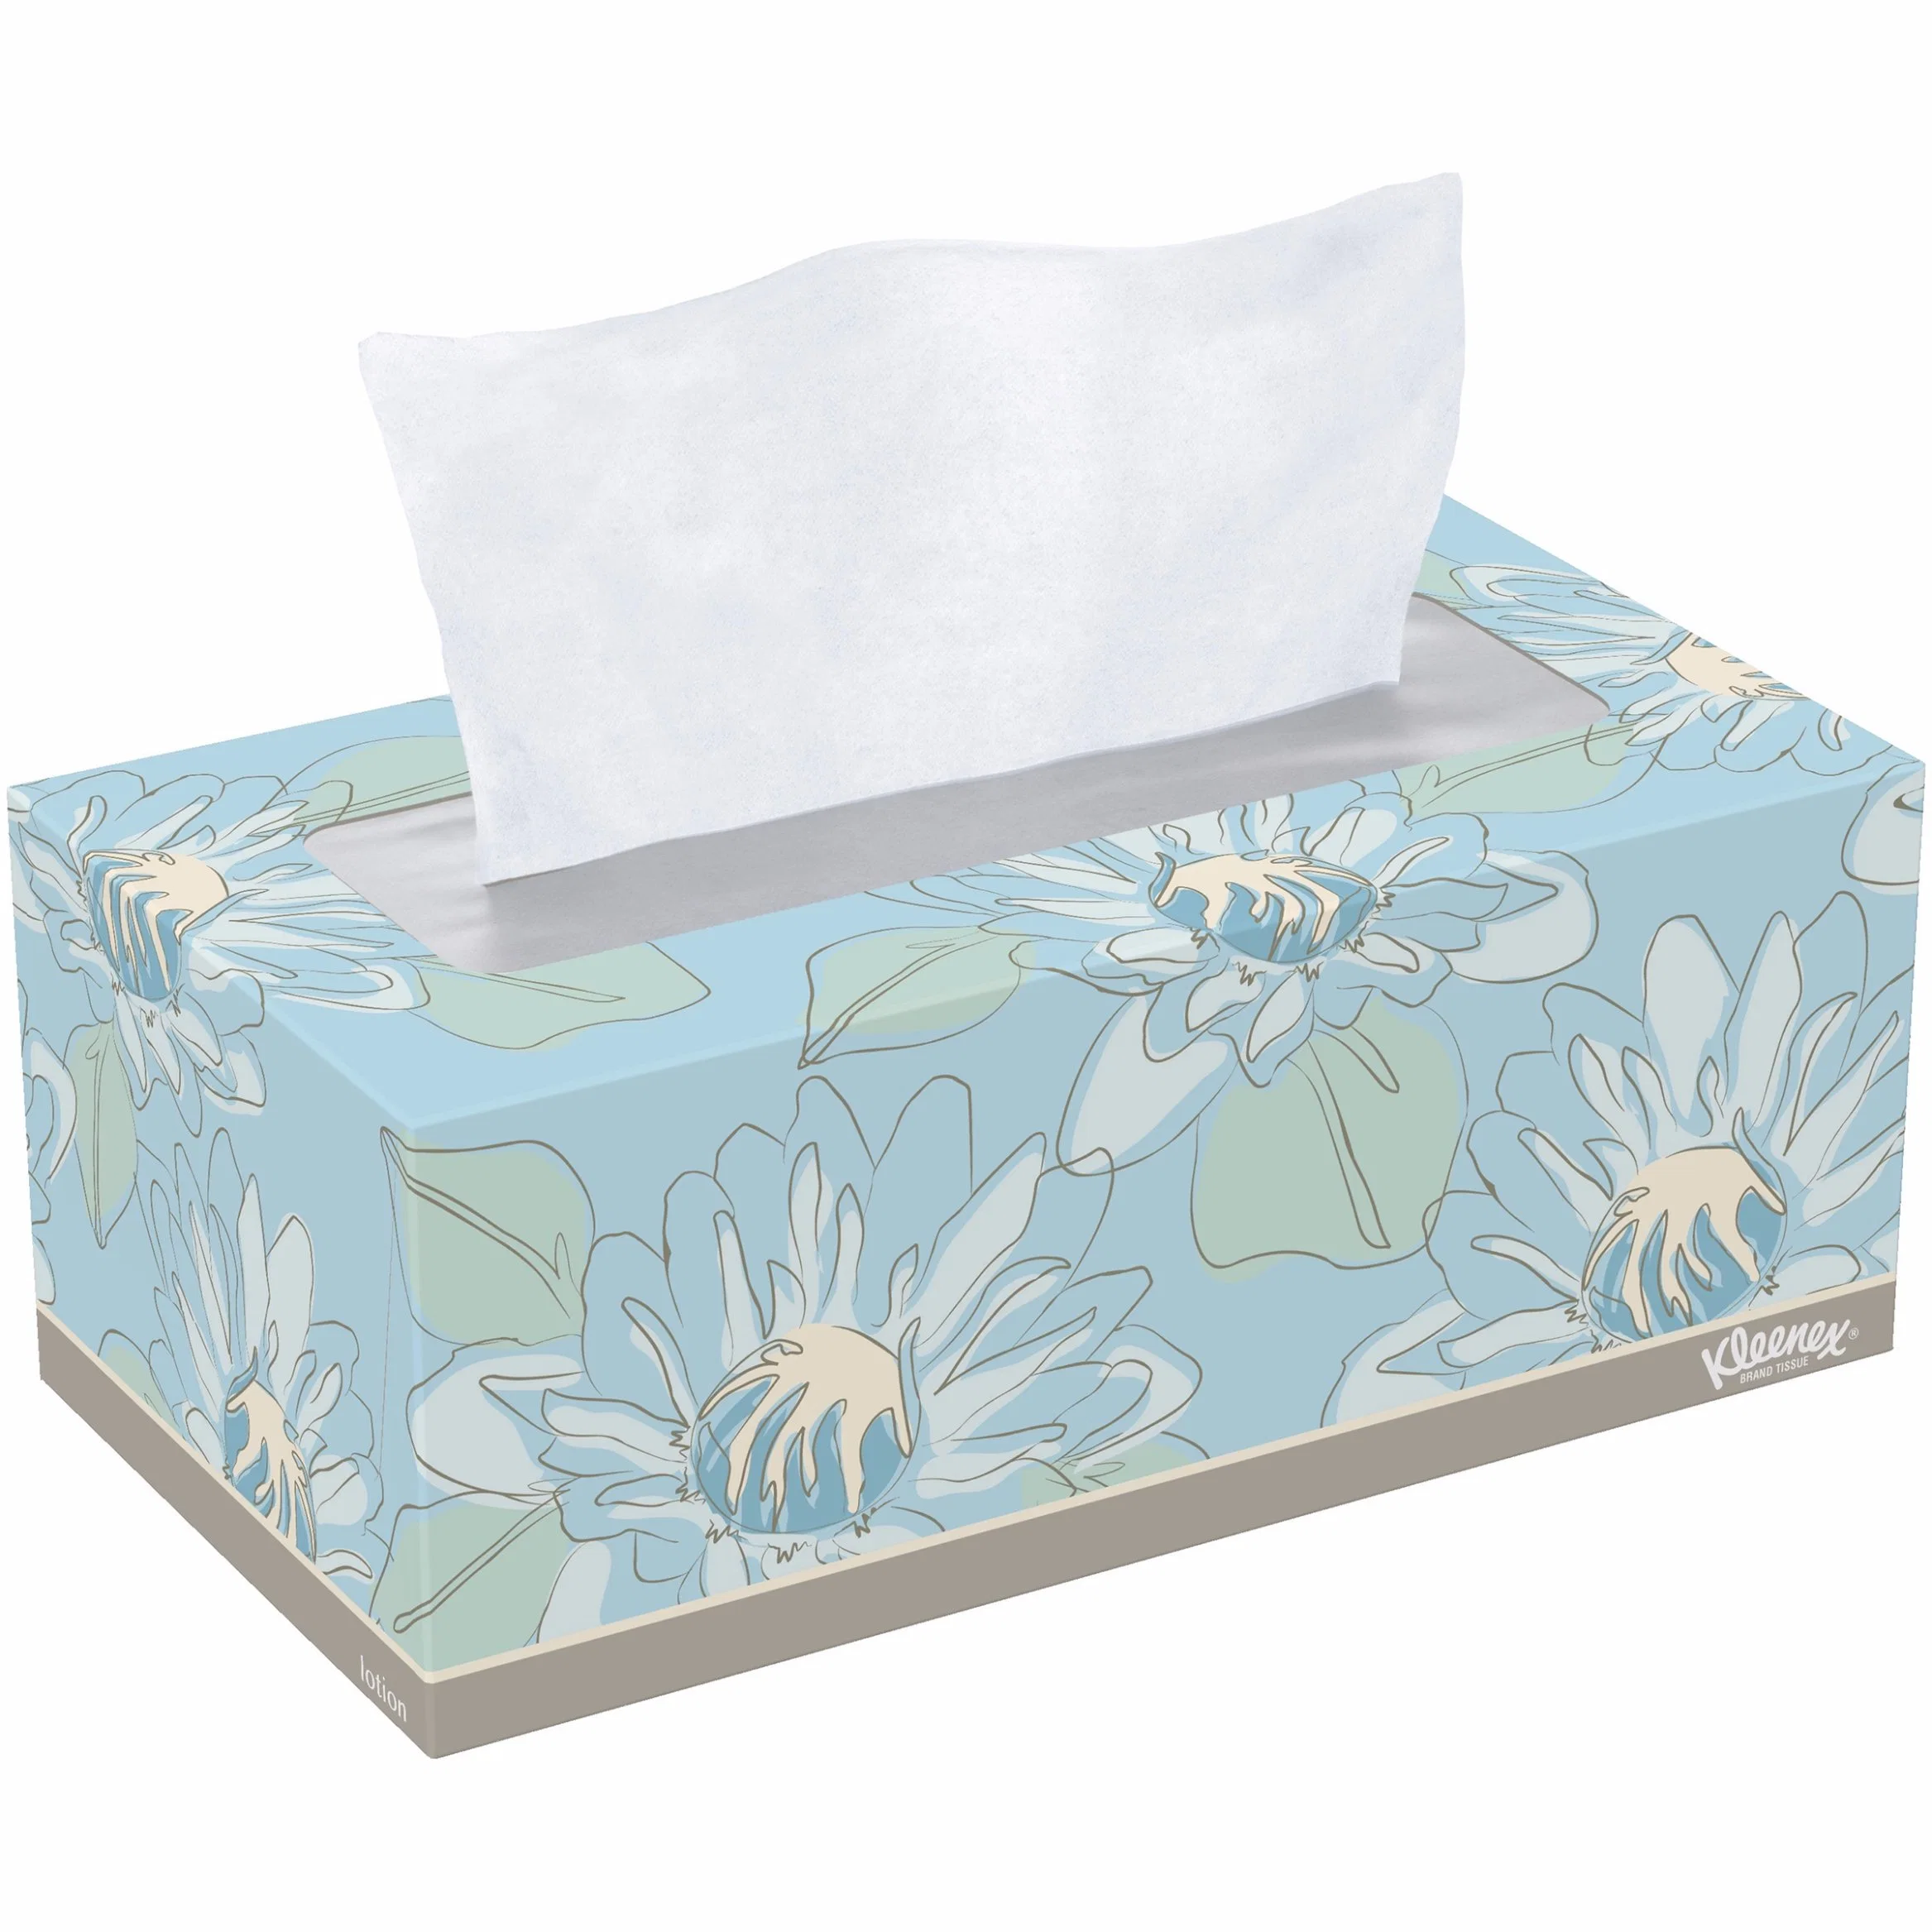 Haushalt Tägliche Verwendung Box Tissue Weichpapier Tissue